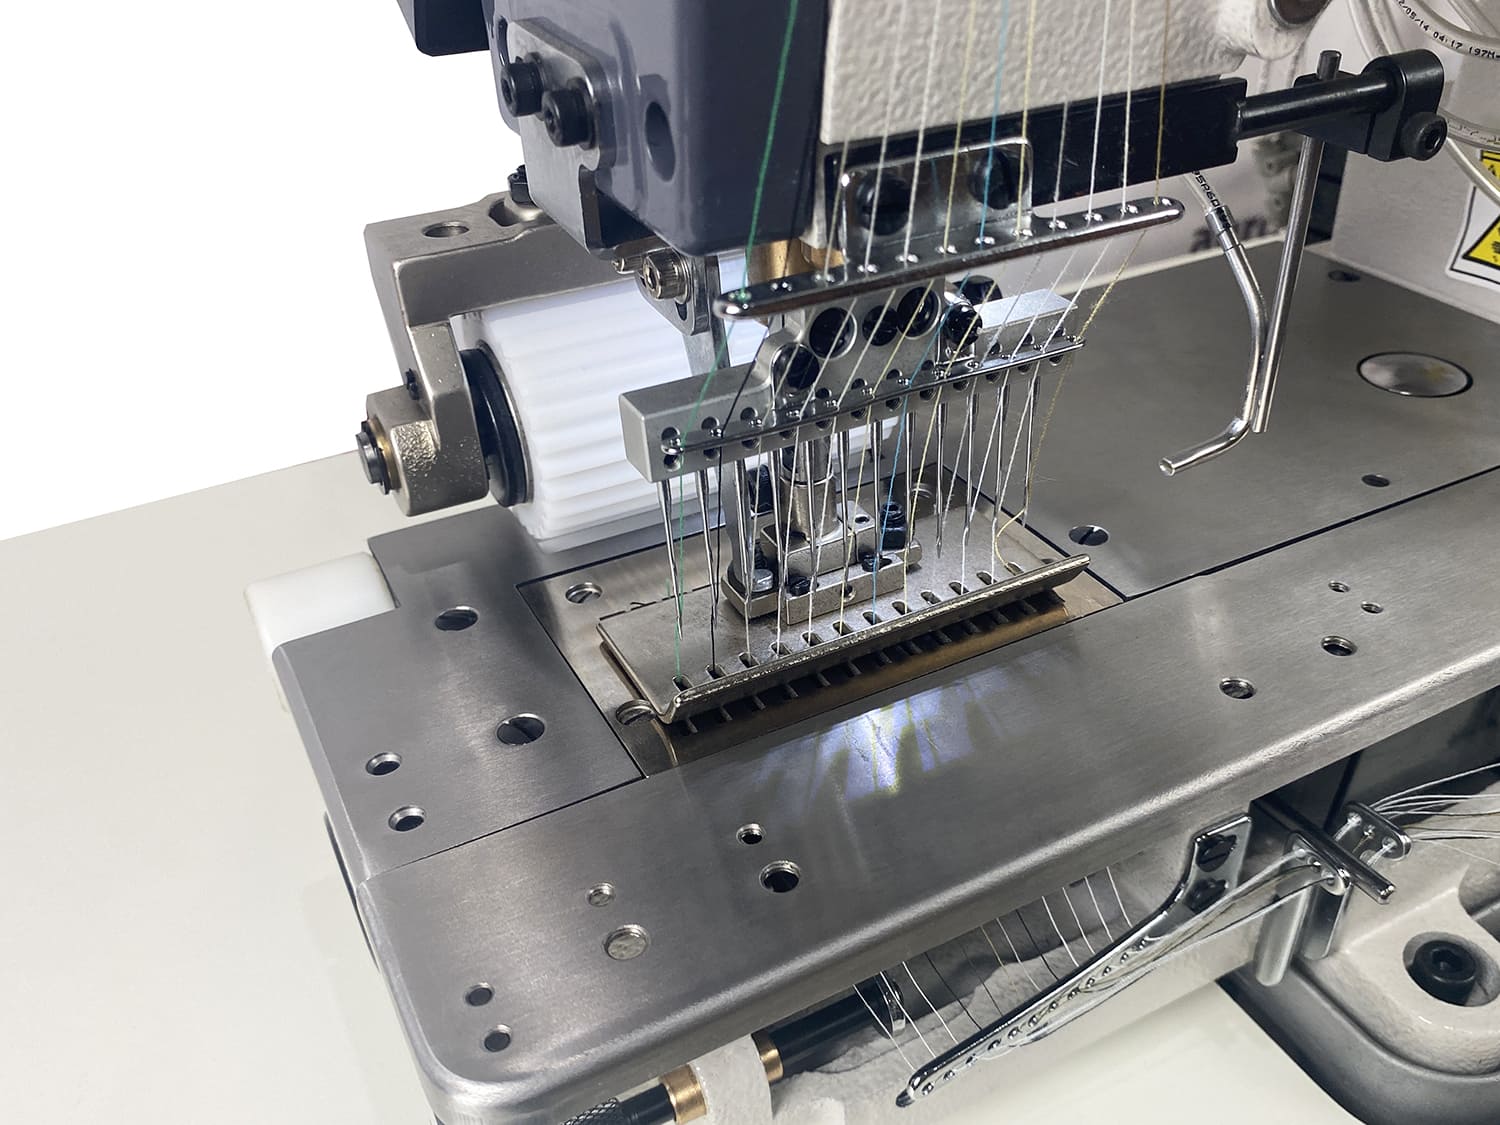 Многоигольная промышленная швейная машина (поясная машина) Aurora A-12064P-D-UT (прямой привод, автоматические функции)